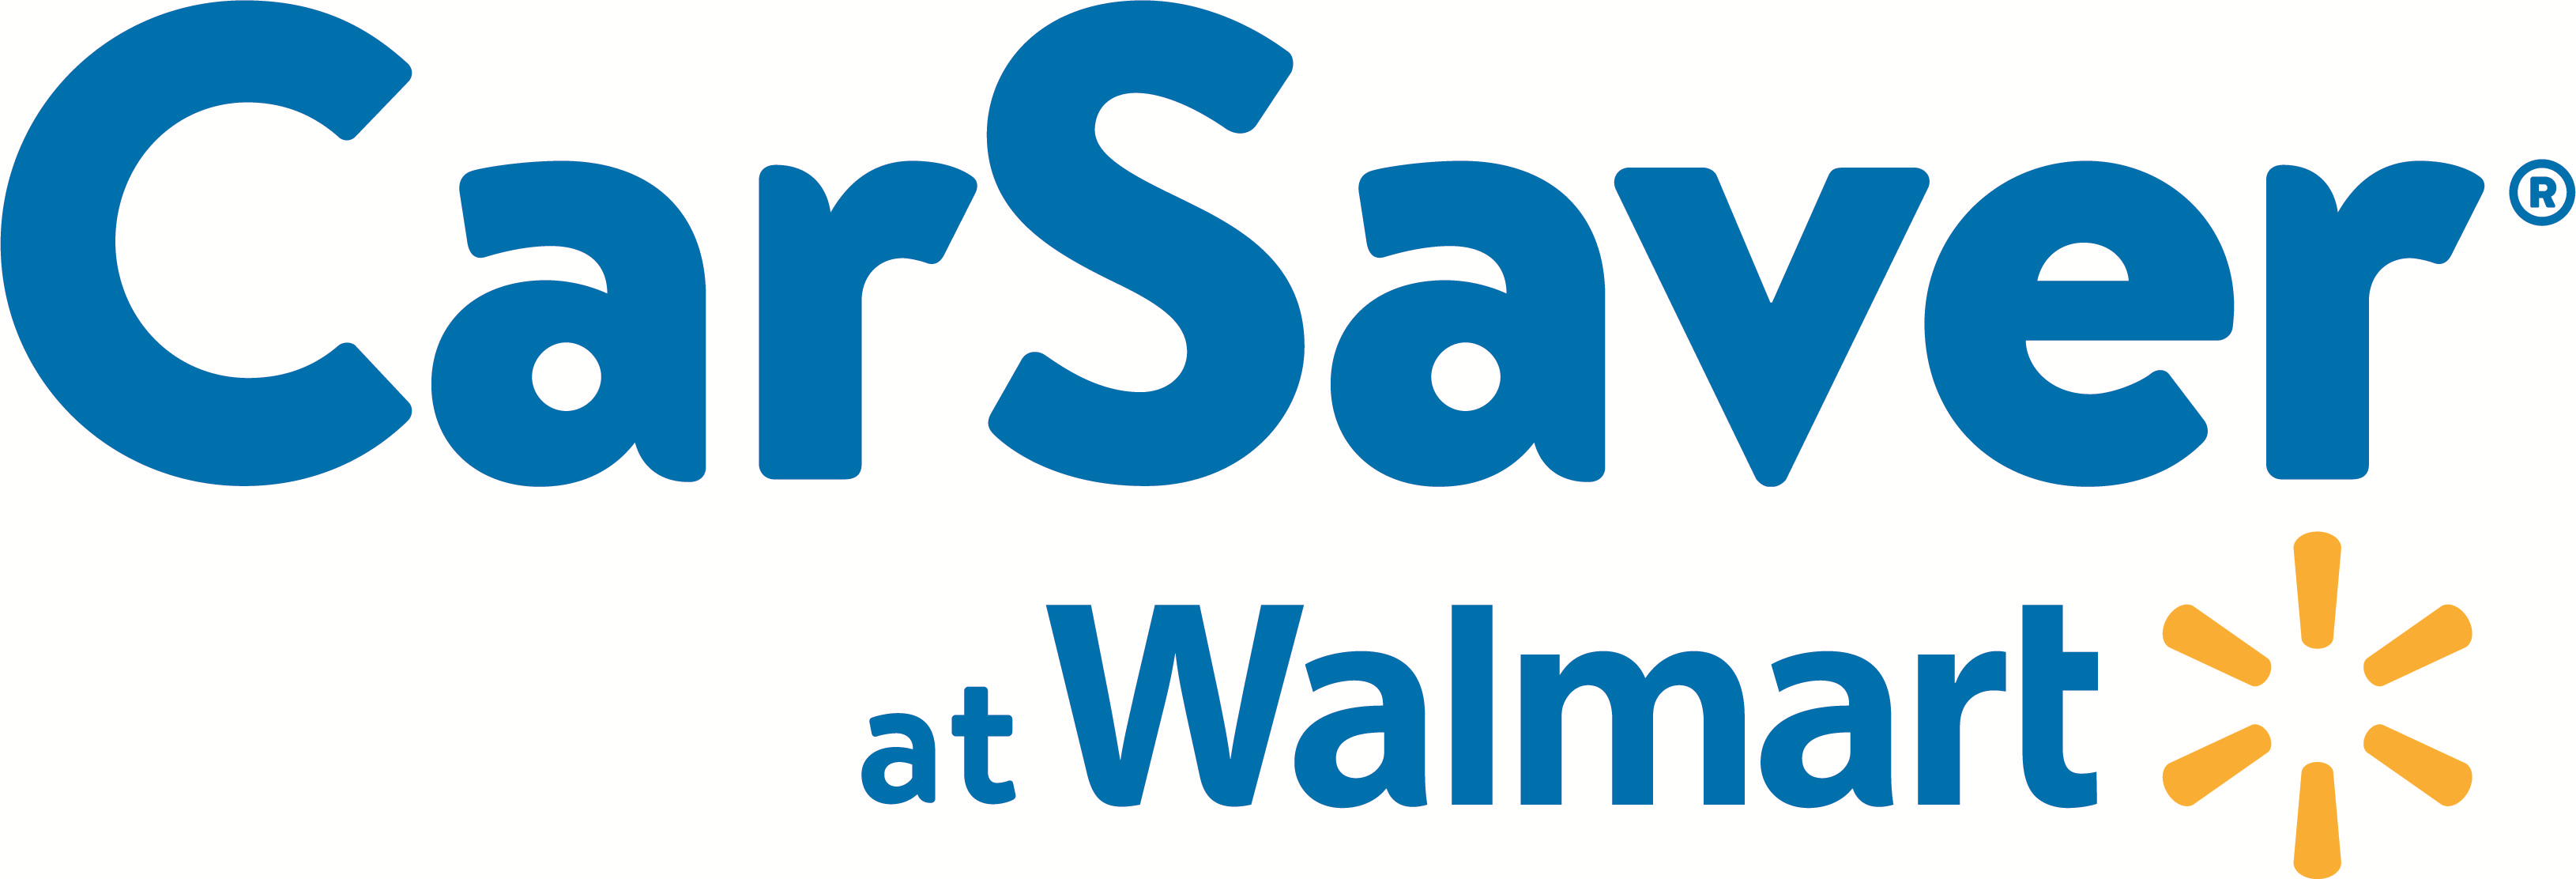 CarSaver Logo